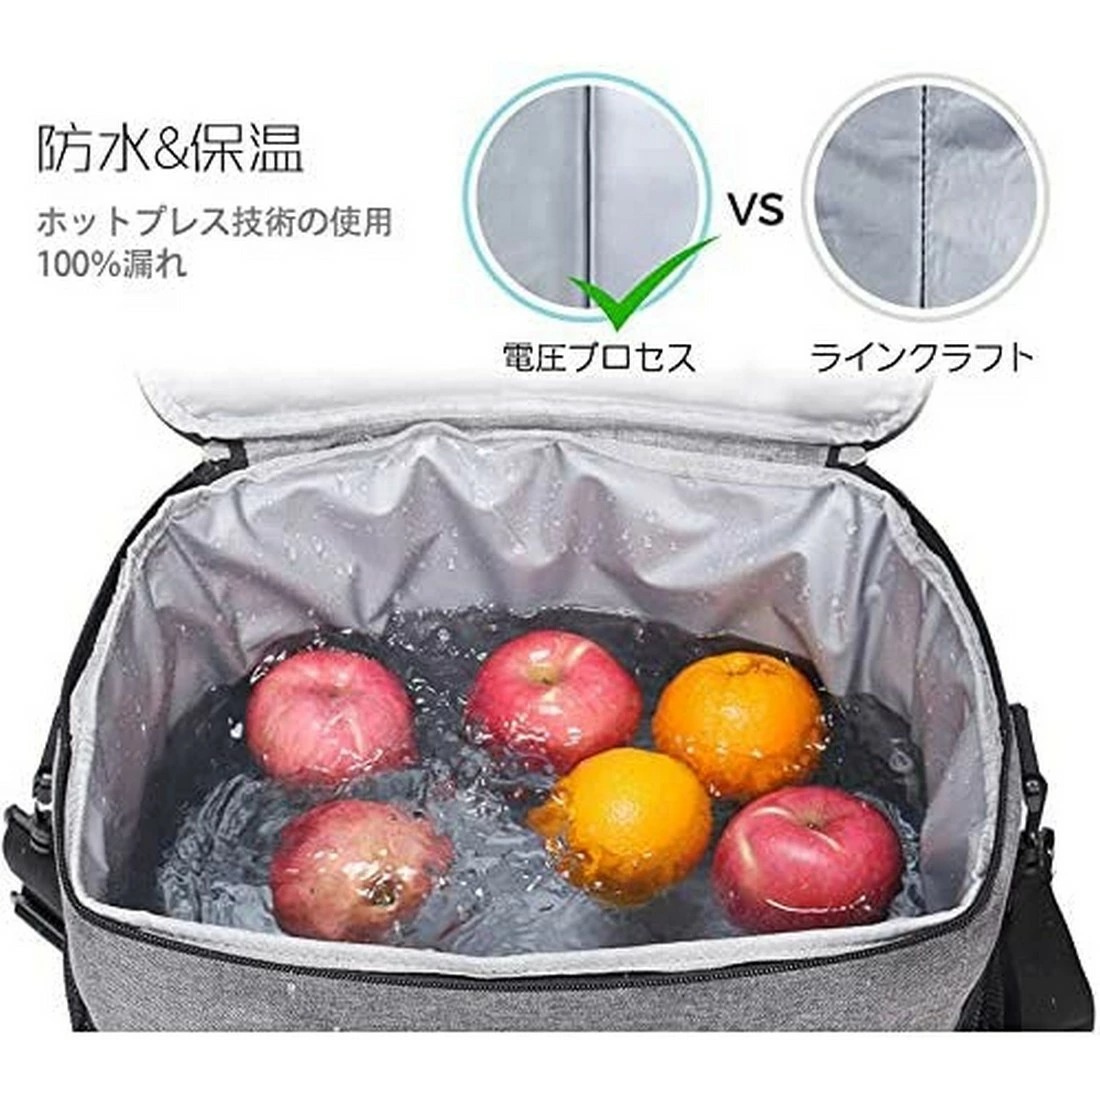  cooler-box keep cool bag heat insulation bag 25L lunch bag soft cooler,air conditioner cooler bag insulation bag folding type sl1060-bl-25l